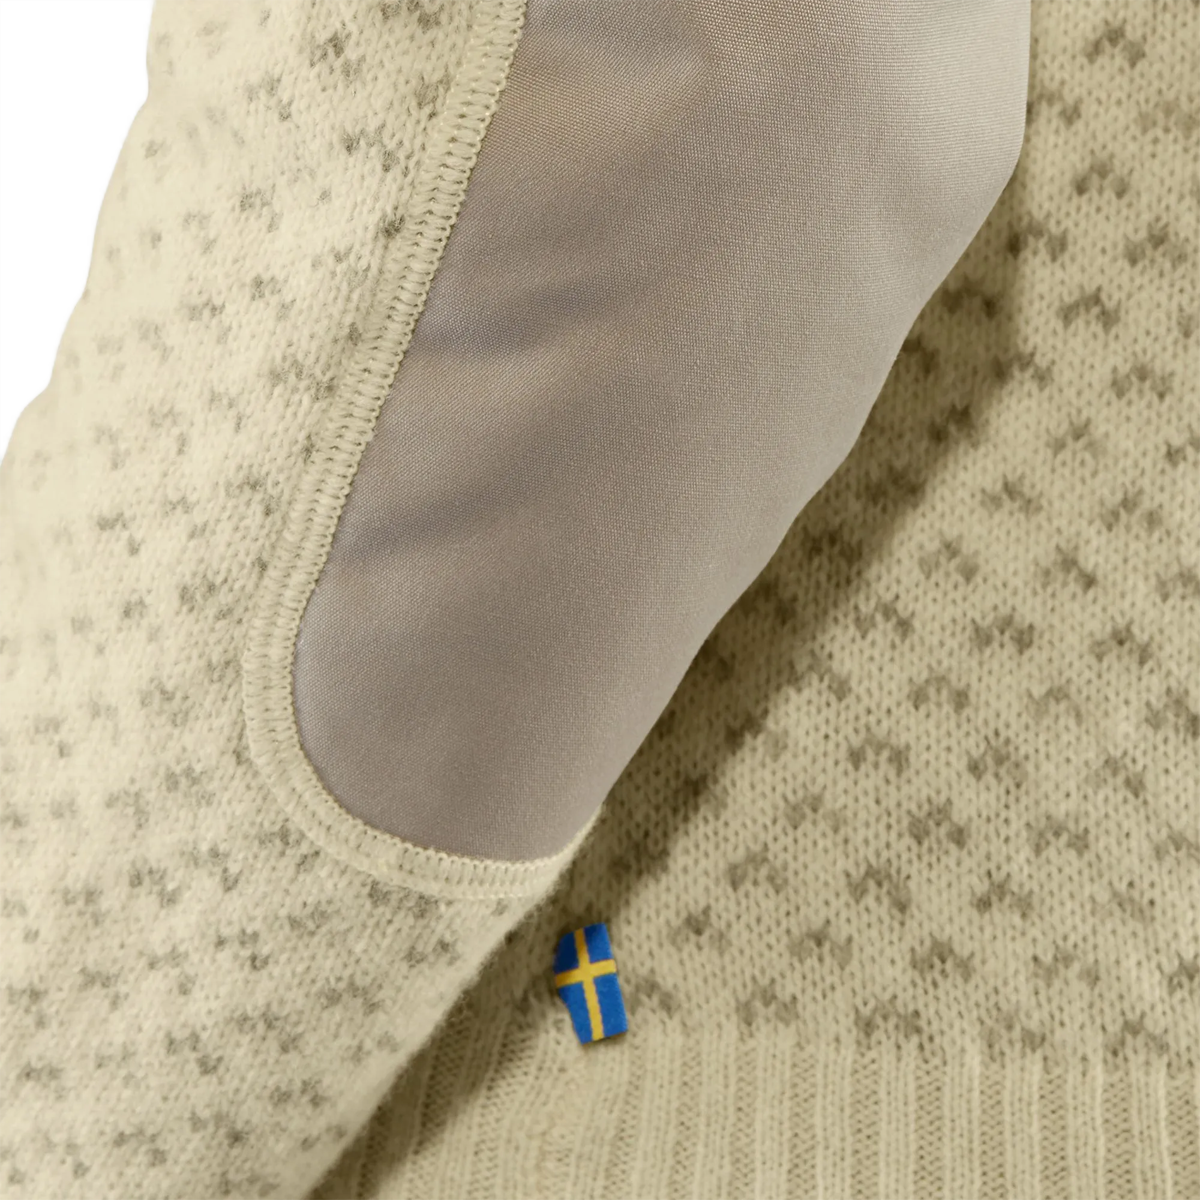 Women's Ovik Nordic Sweater alternate view